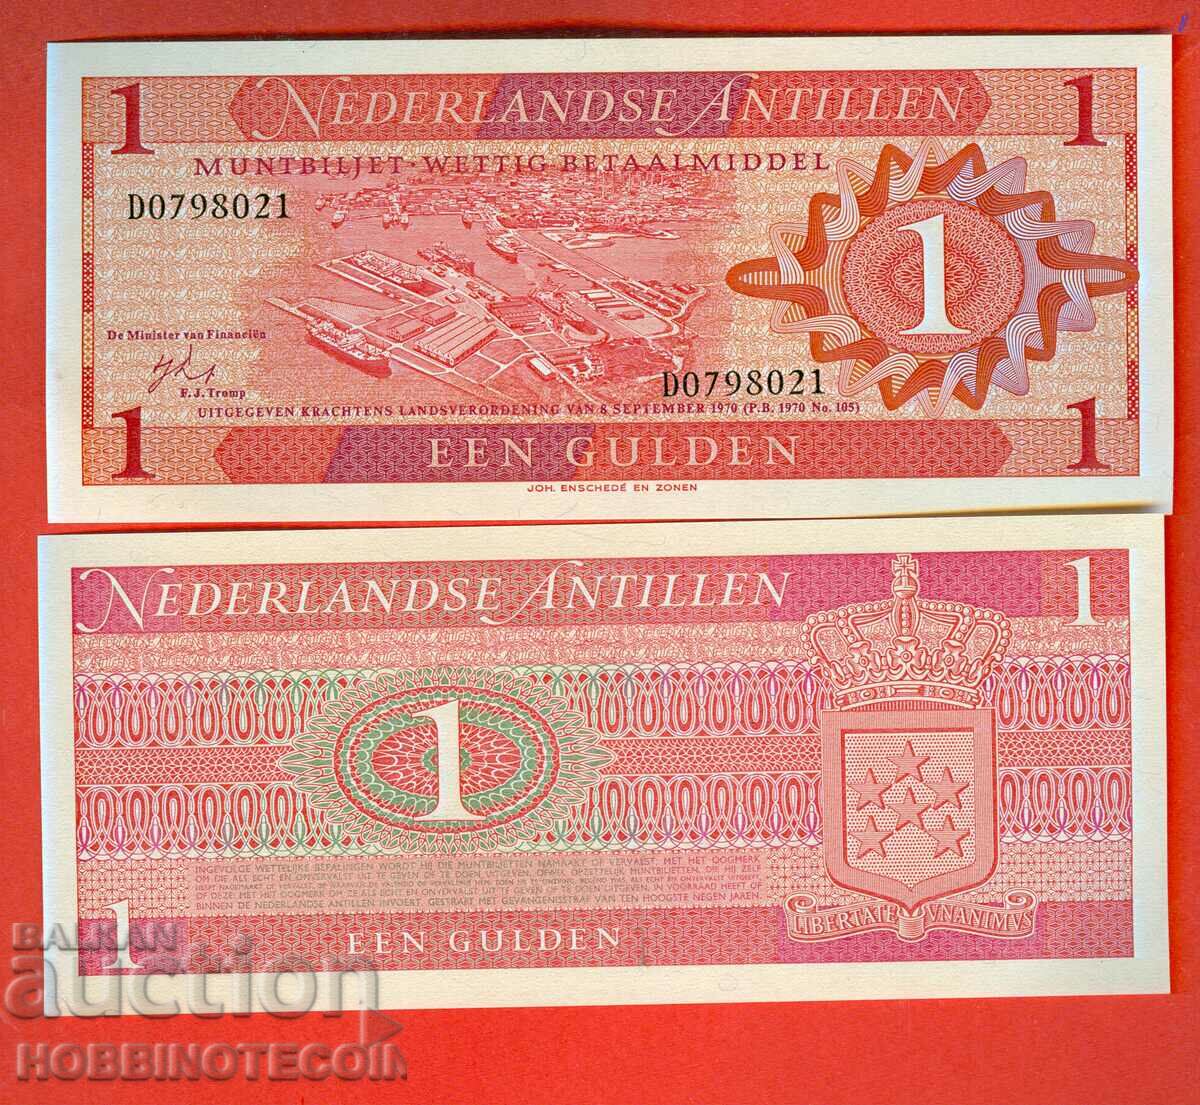 NETHERLANDS ANTILLES - 1 Gulden issue issue 1970 NEW UNC